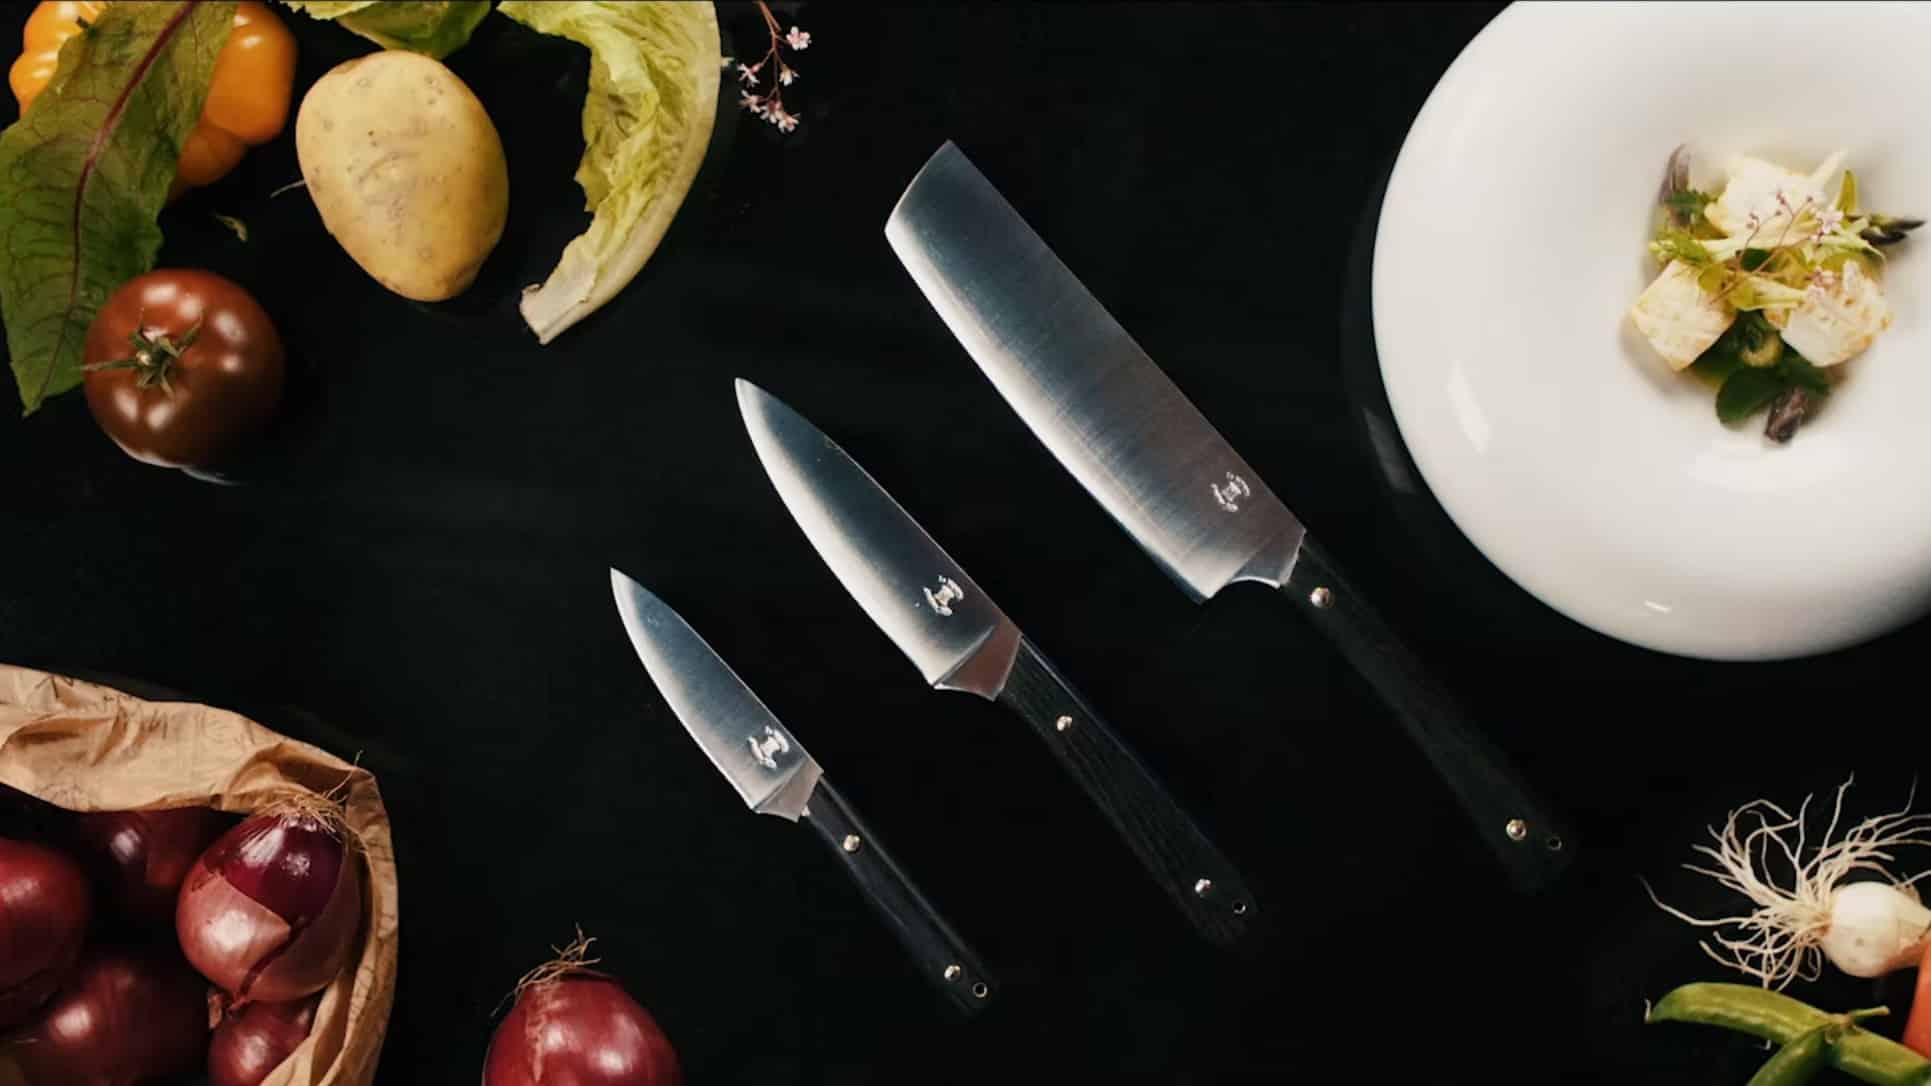 Couteaux de cuisine de l'atelier JHP, au milieu de fruits et légumes ainsi que d'une assiette gastronomique